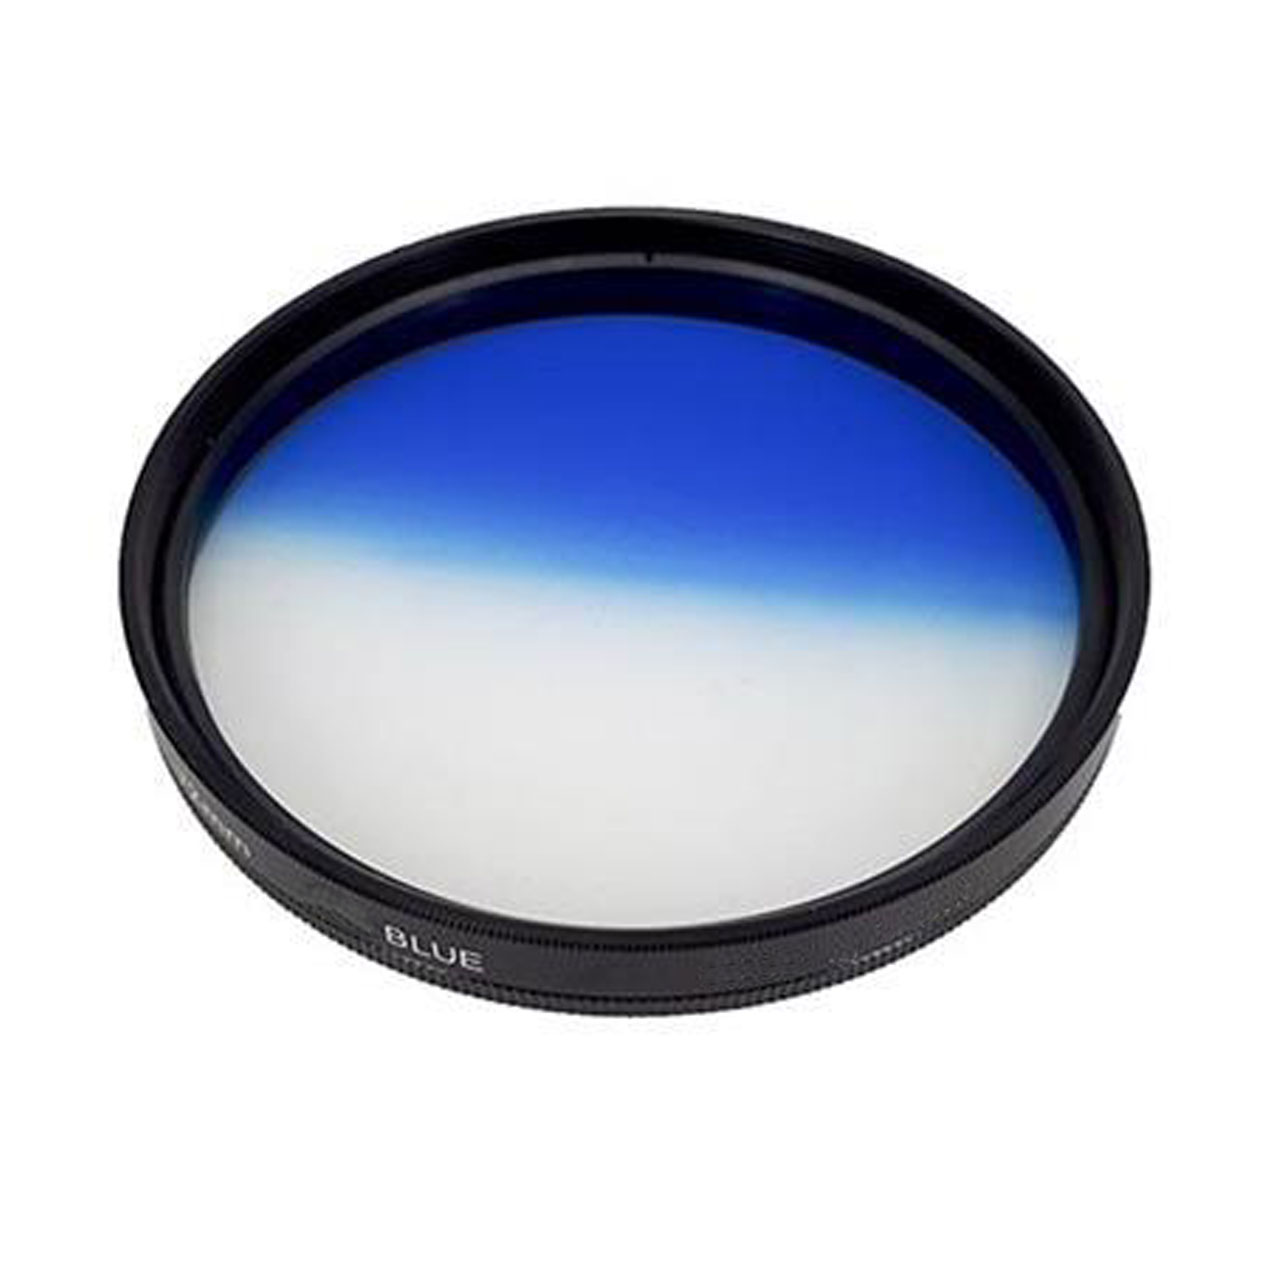 فیلتر لنز کی اند اف مدل HMC UV C SERIES 58mm